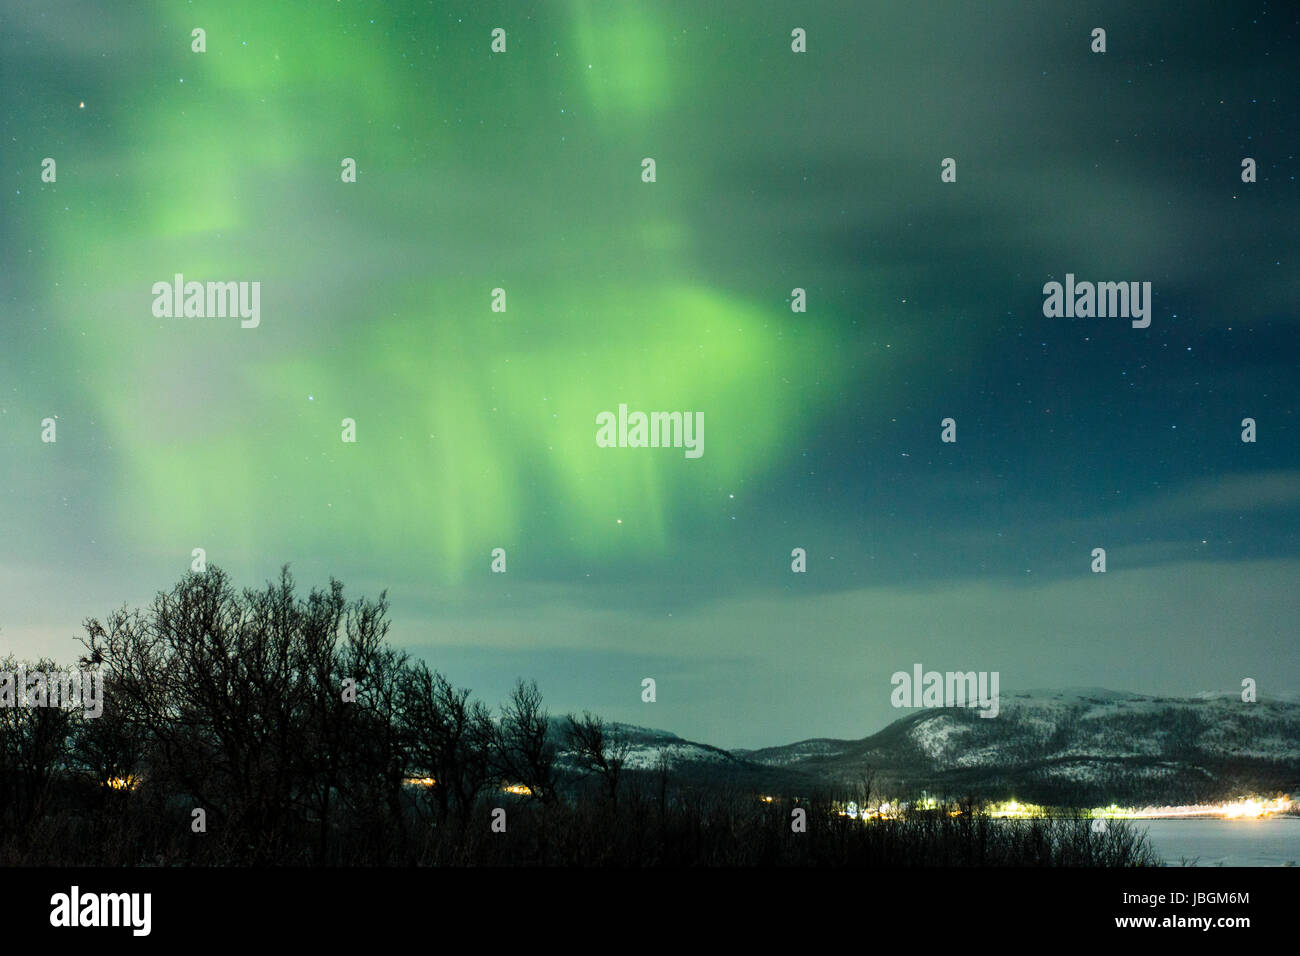 Polarlicht (Aurora borealis) in Norwegen, bei Kirkenes am See Rundvatnet Stock Photo